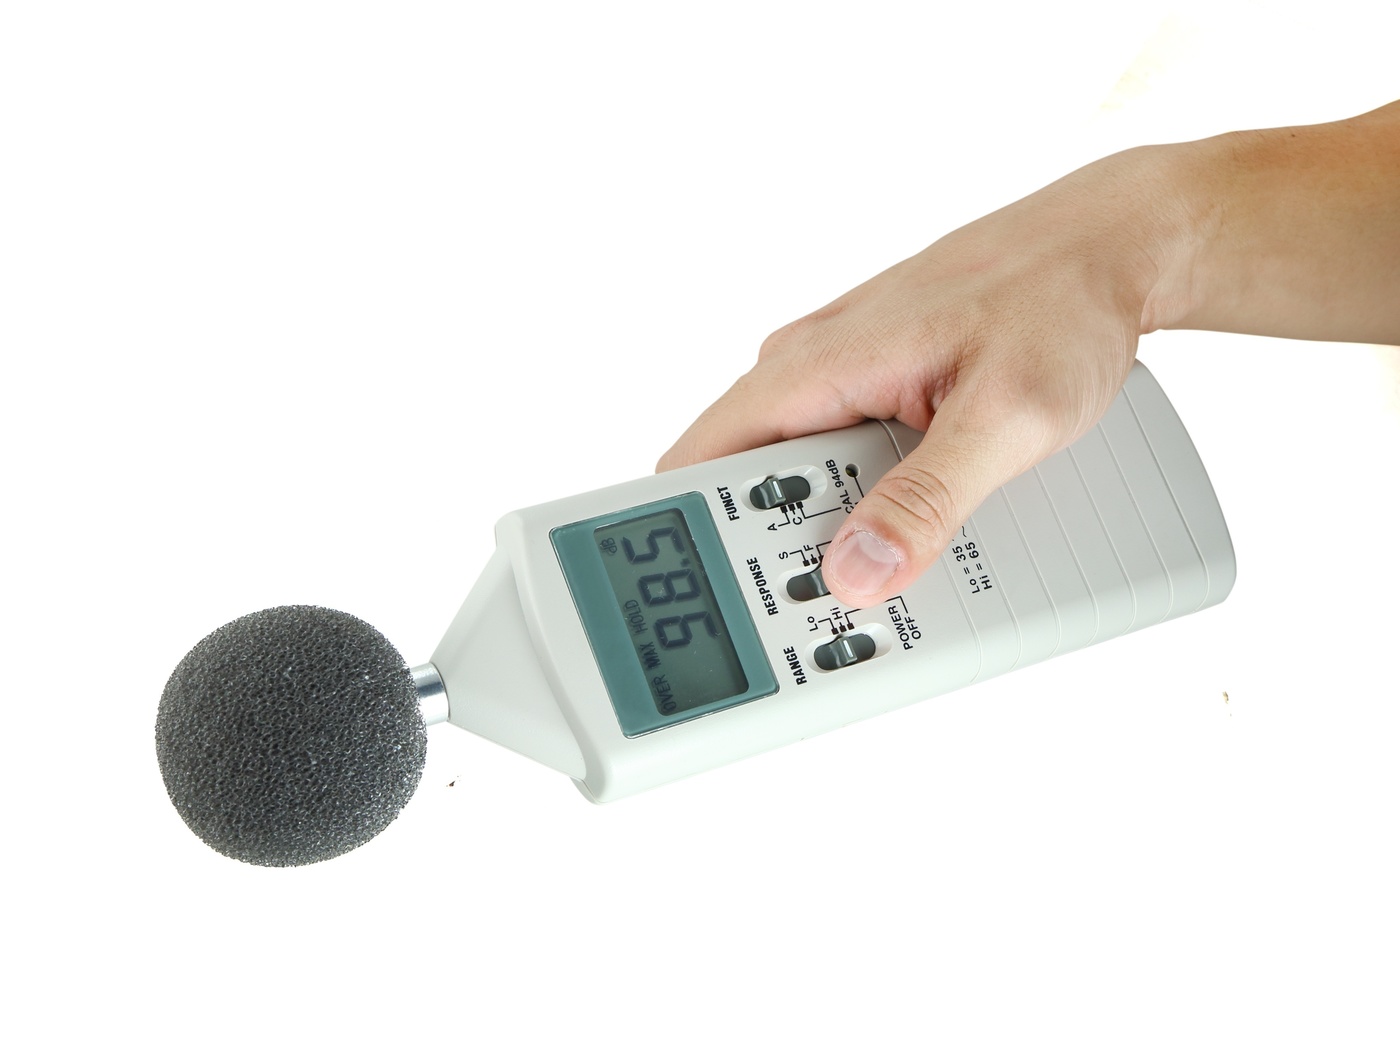 騒音計おすすめ10選│簡易的に使える安価モデル・精密な計測ができる商品も マイナビおすすめナビ